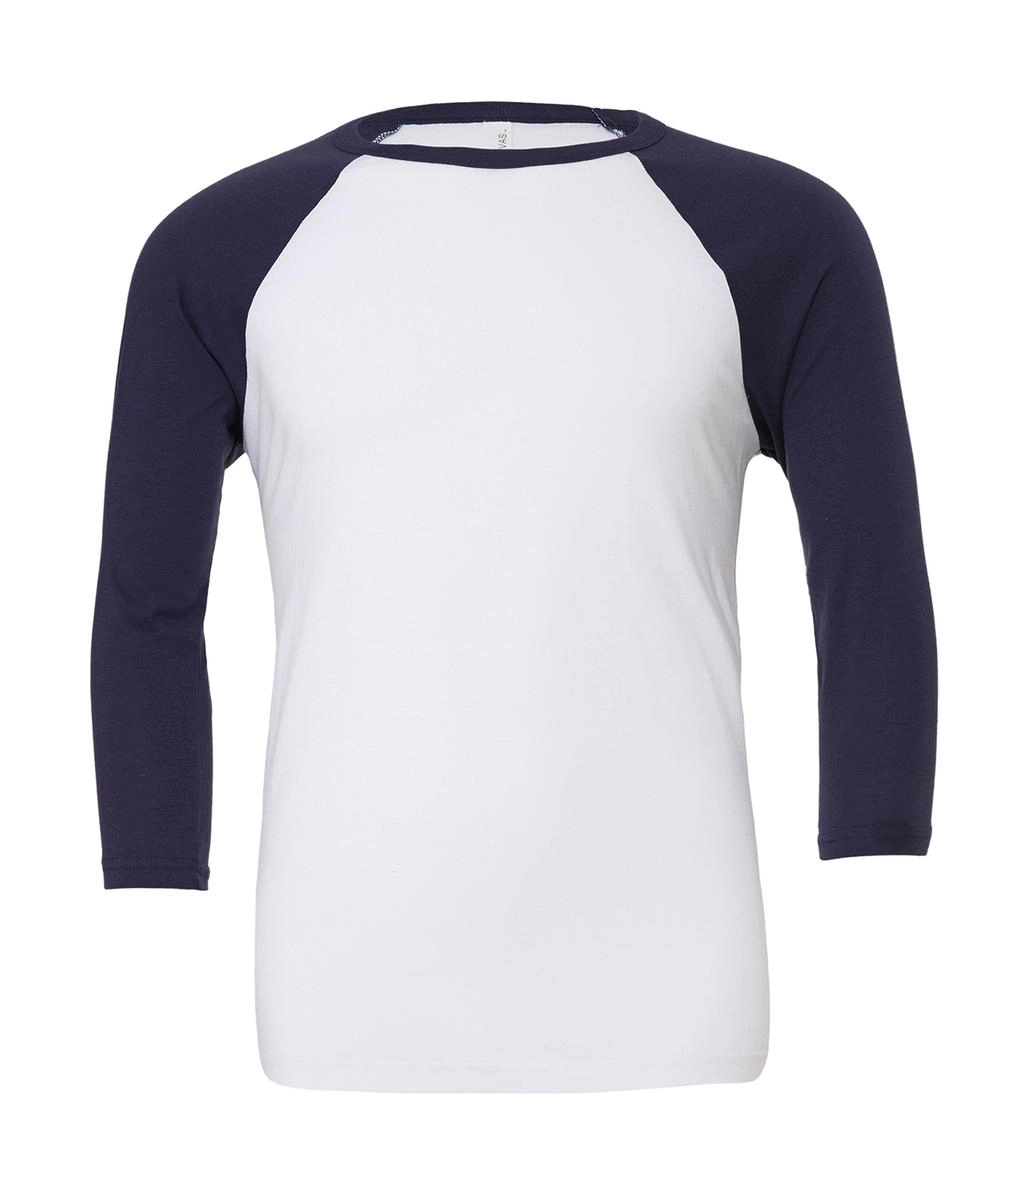 Unisex 3/4 Sleeve Baseball T-Shirt zum Besticken und Bedrucken in der Farbe White/Navy  mit Ihren Logo, Schriftzug oder Motiv.